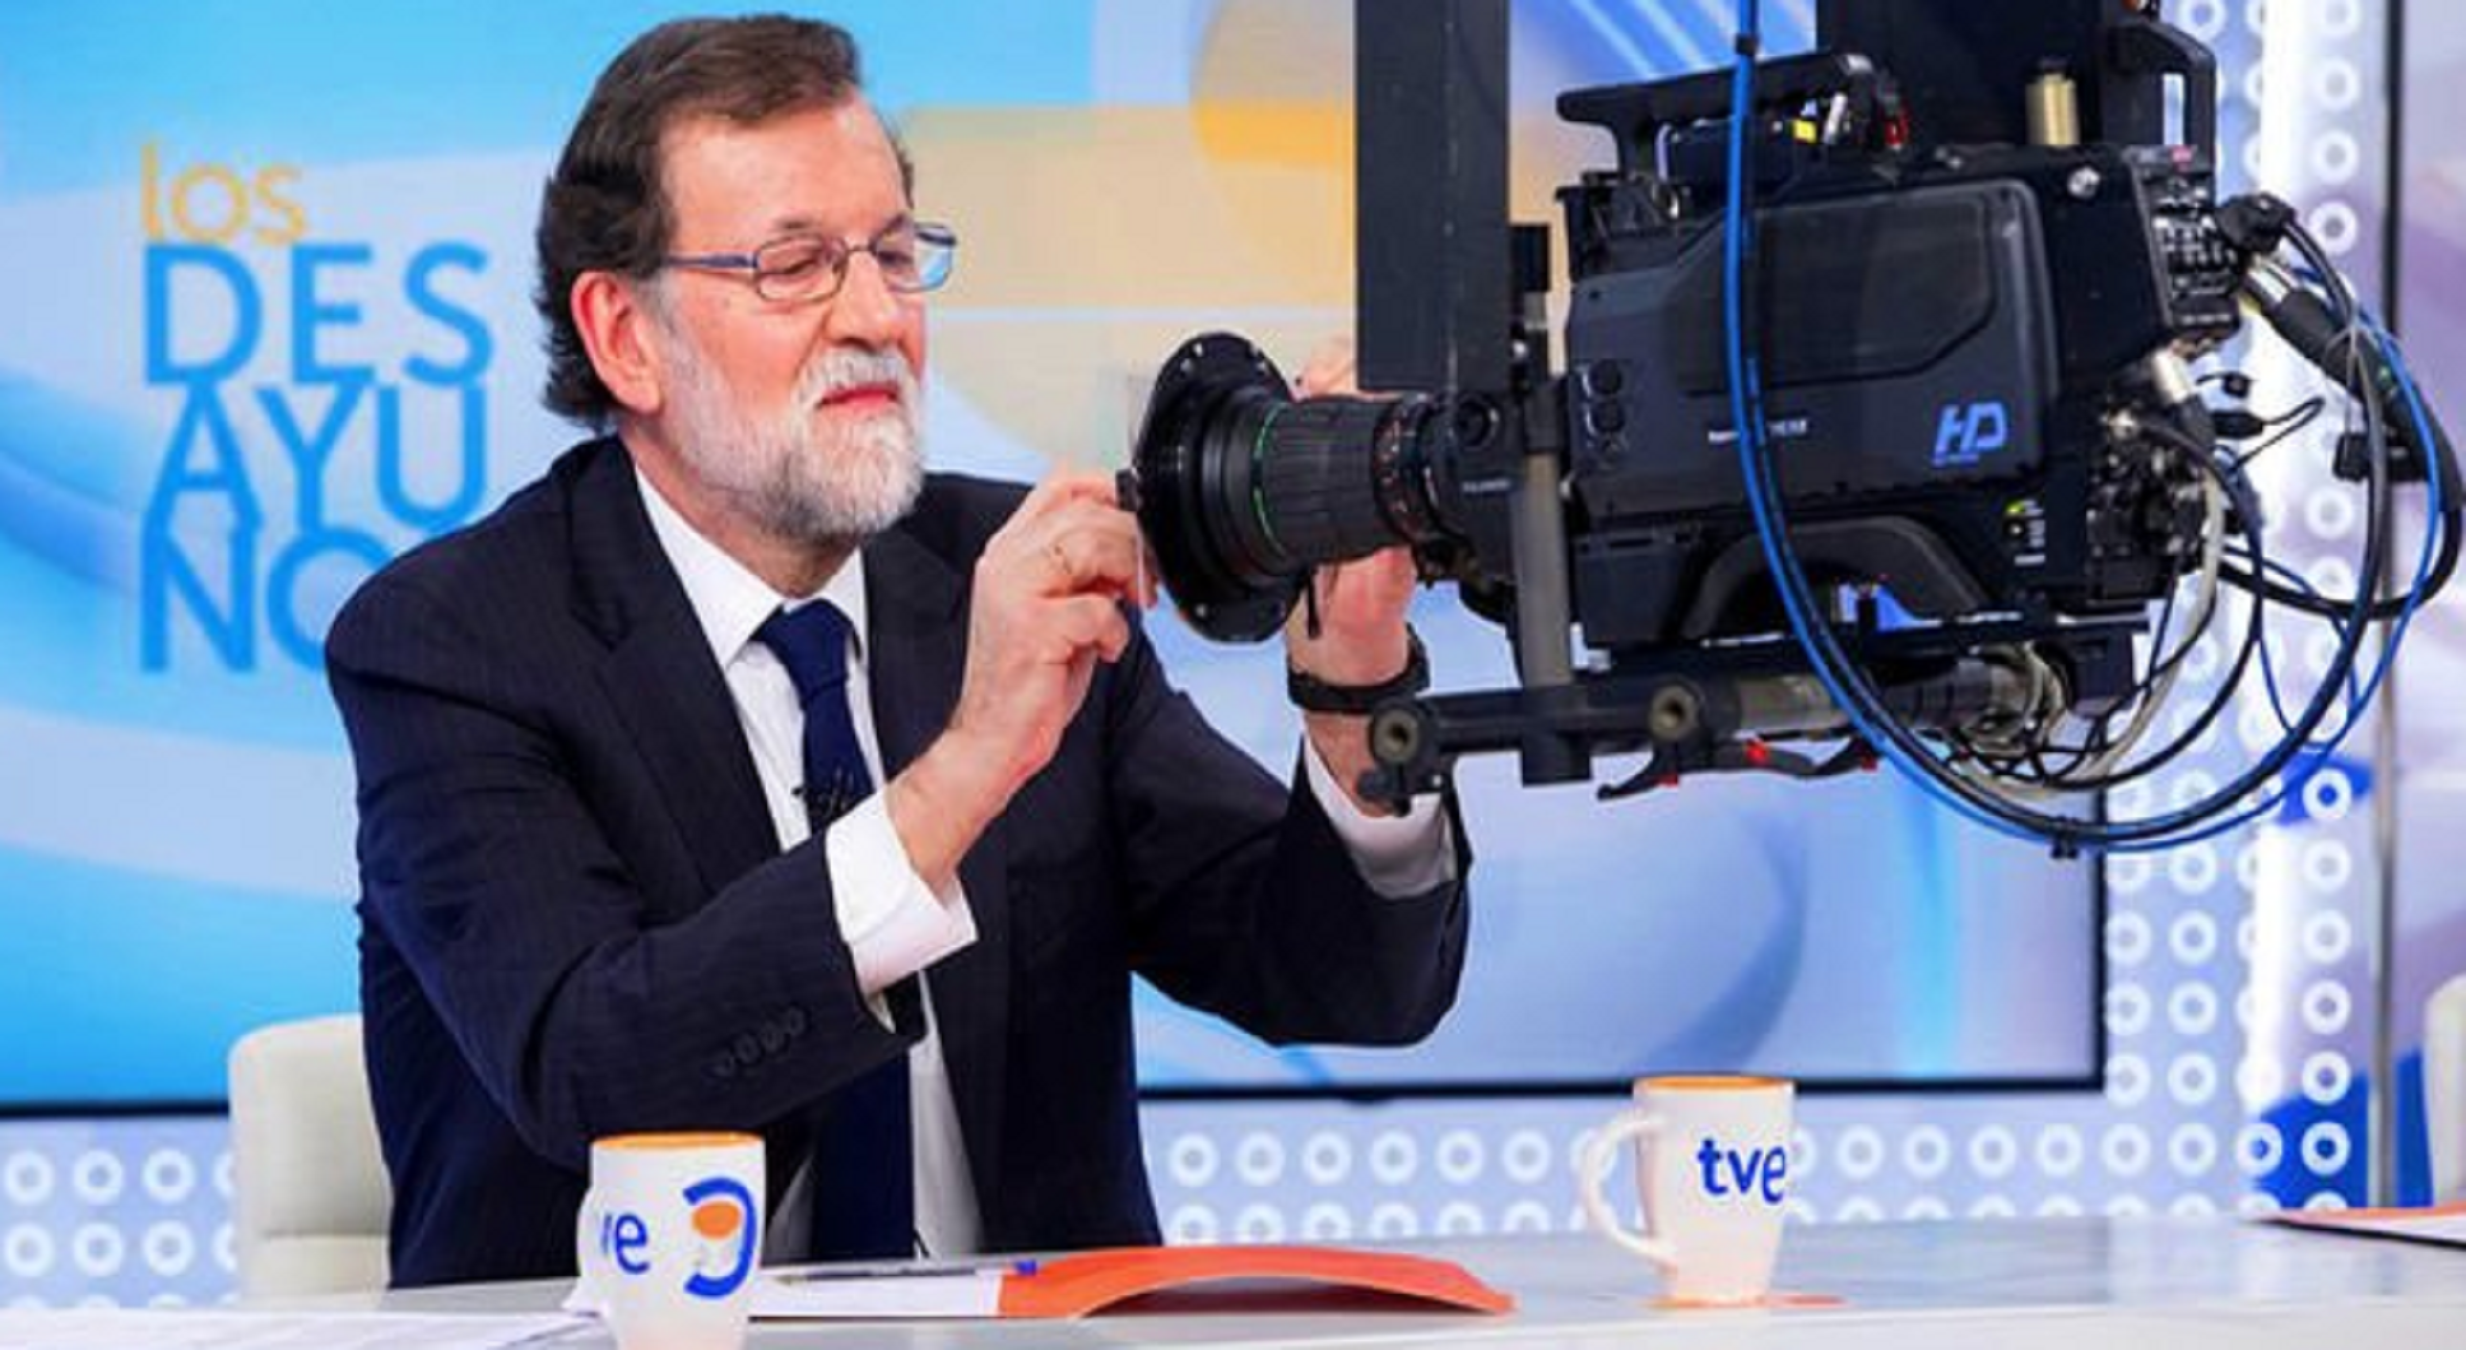 Què canviarà a TVE amb l'adeu a Rajoy?